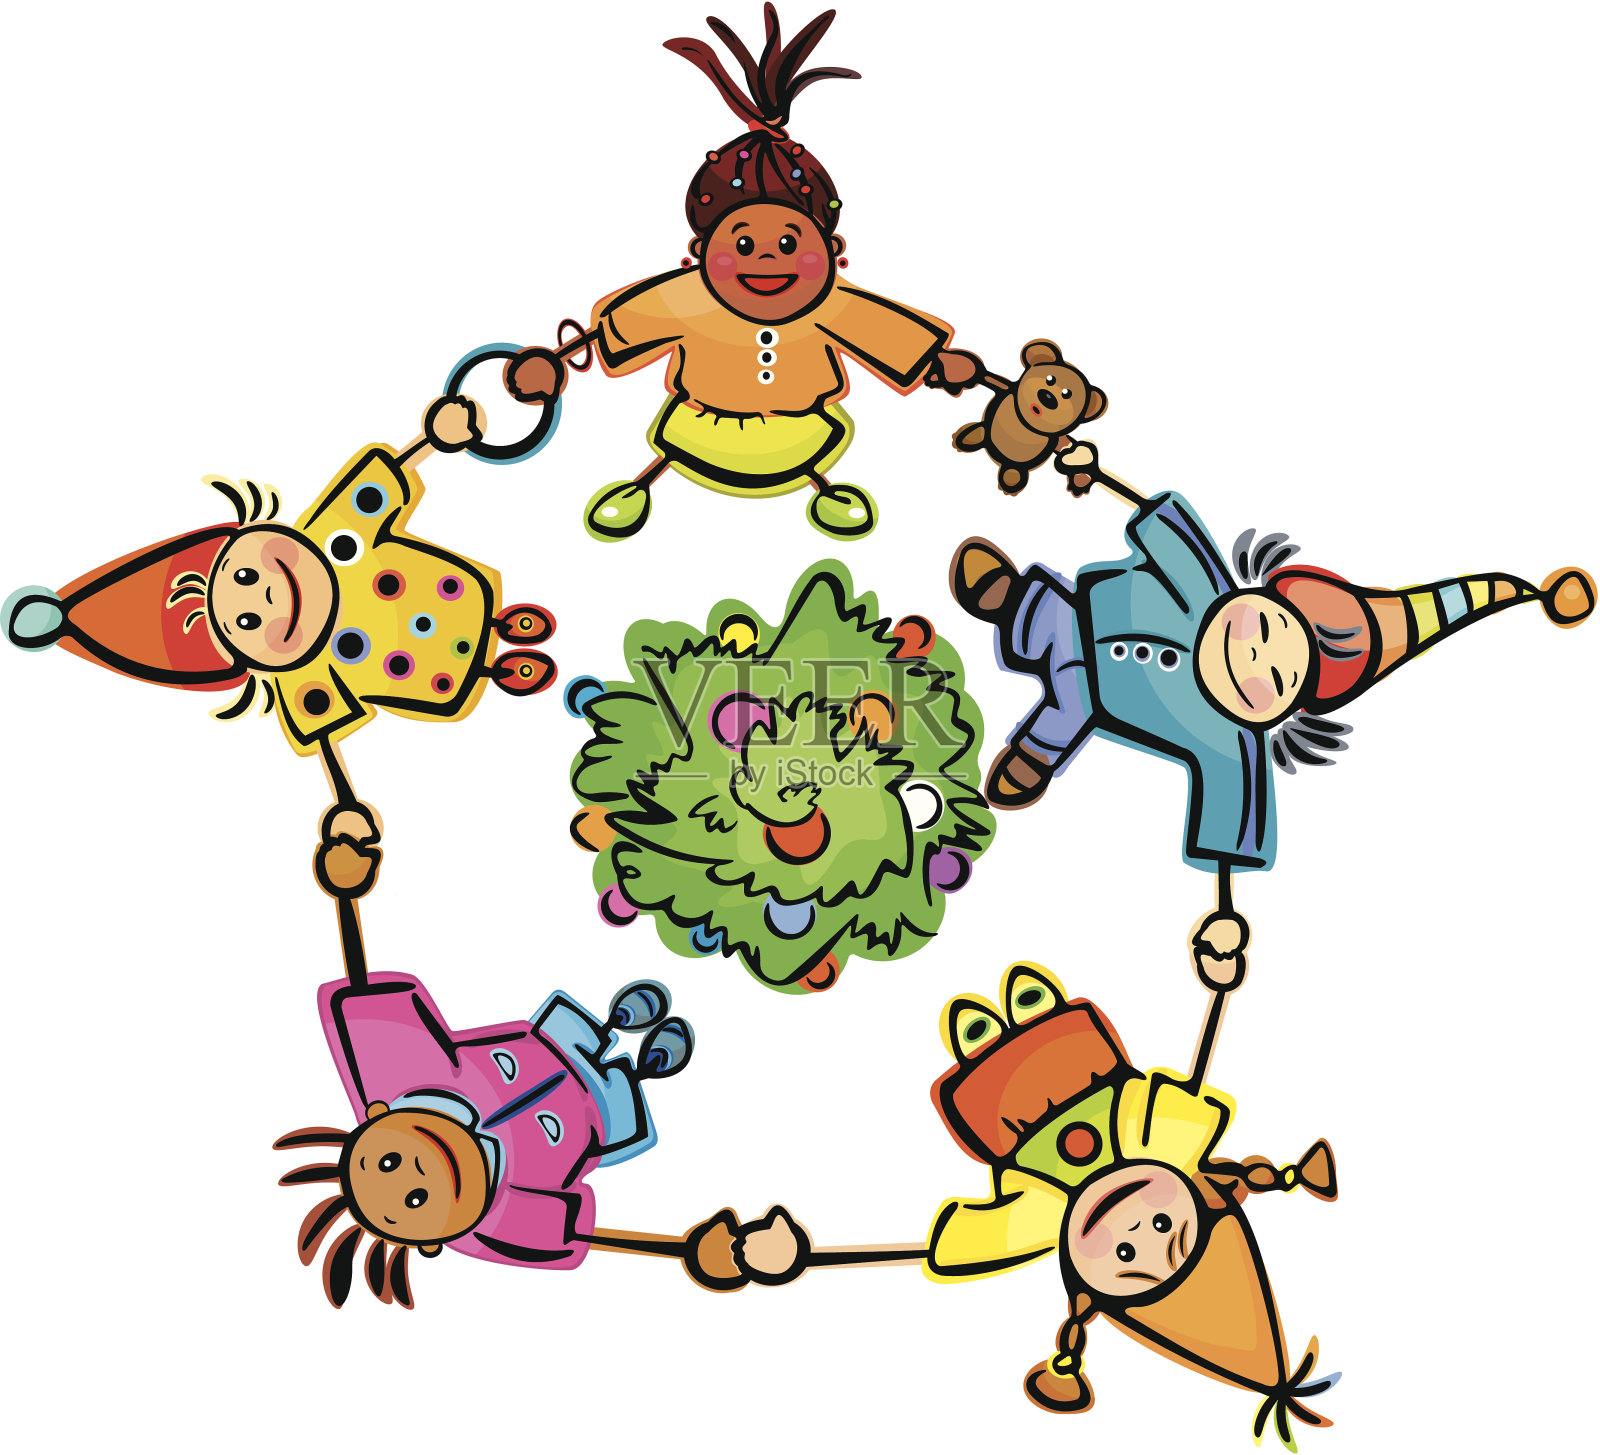 快乐的孩子们围着树跳舞!插画图片素材